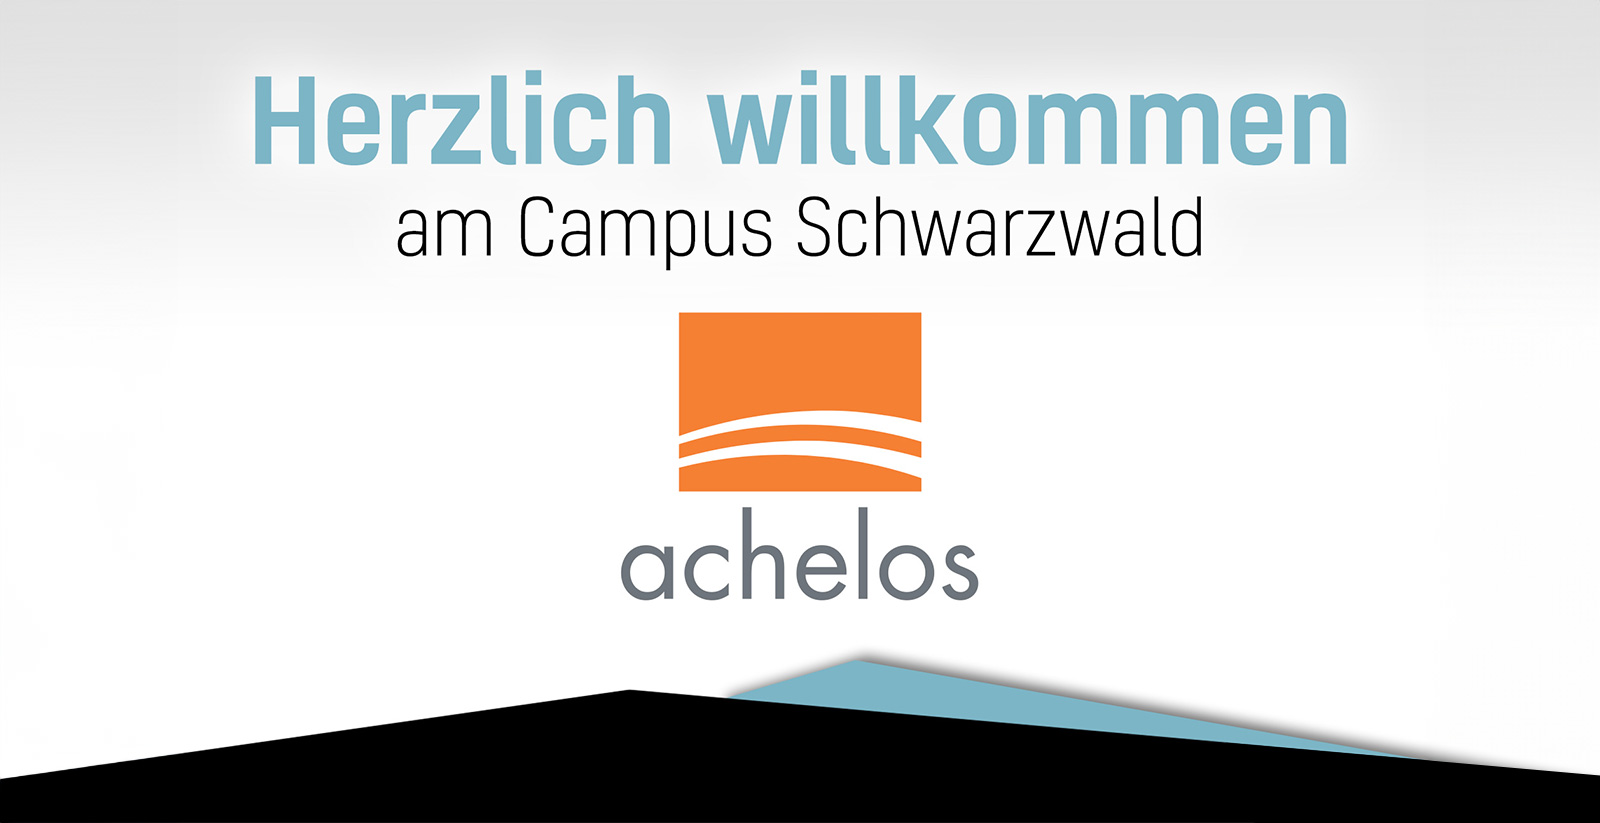 Herzlich willkommen, achelos GmbH!